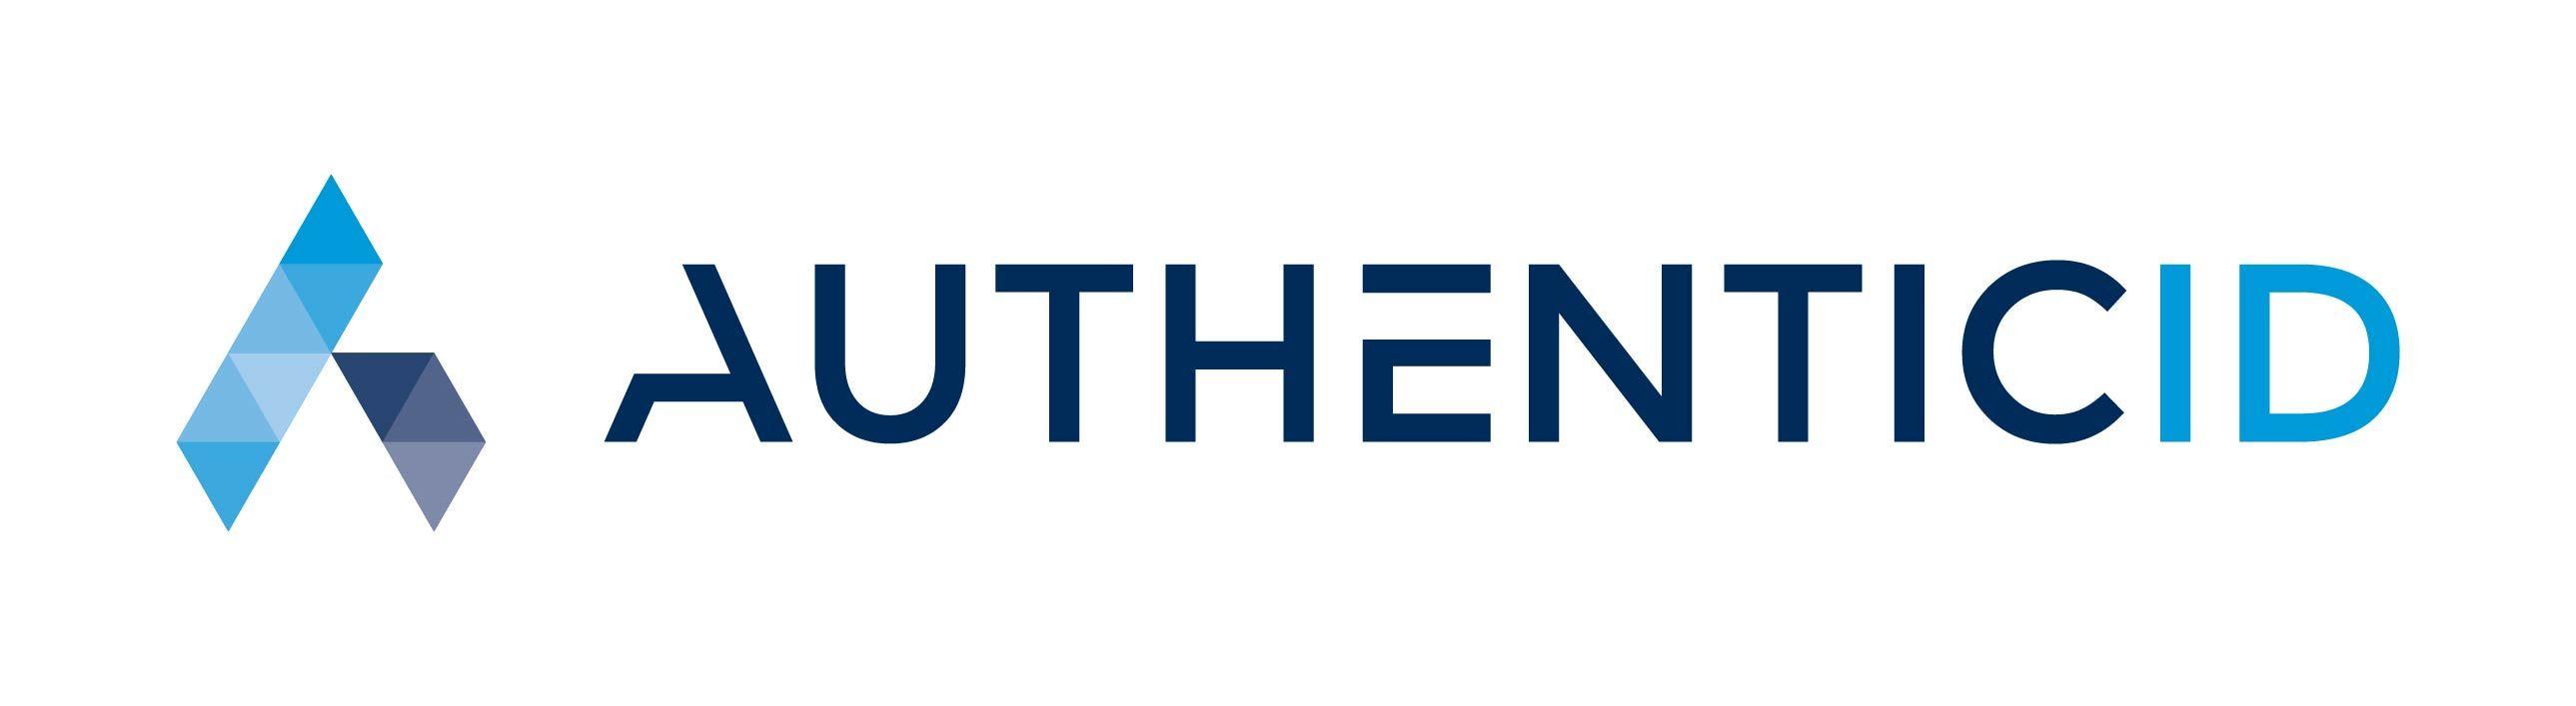 Authenticid Logo - AuthenticID Announces Card Not Present Authentication